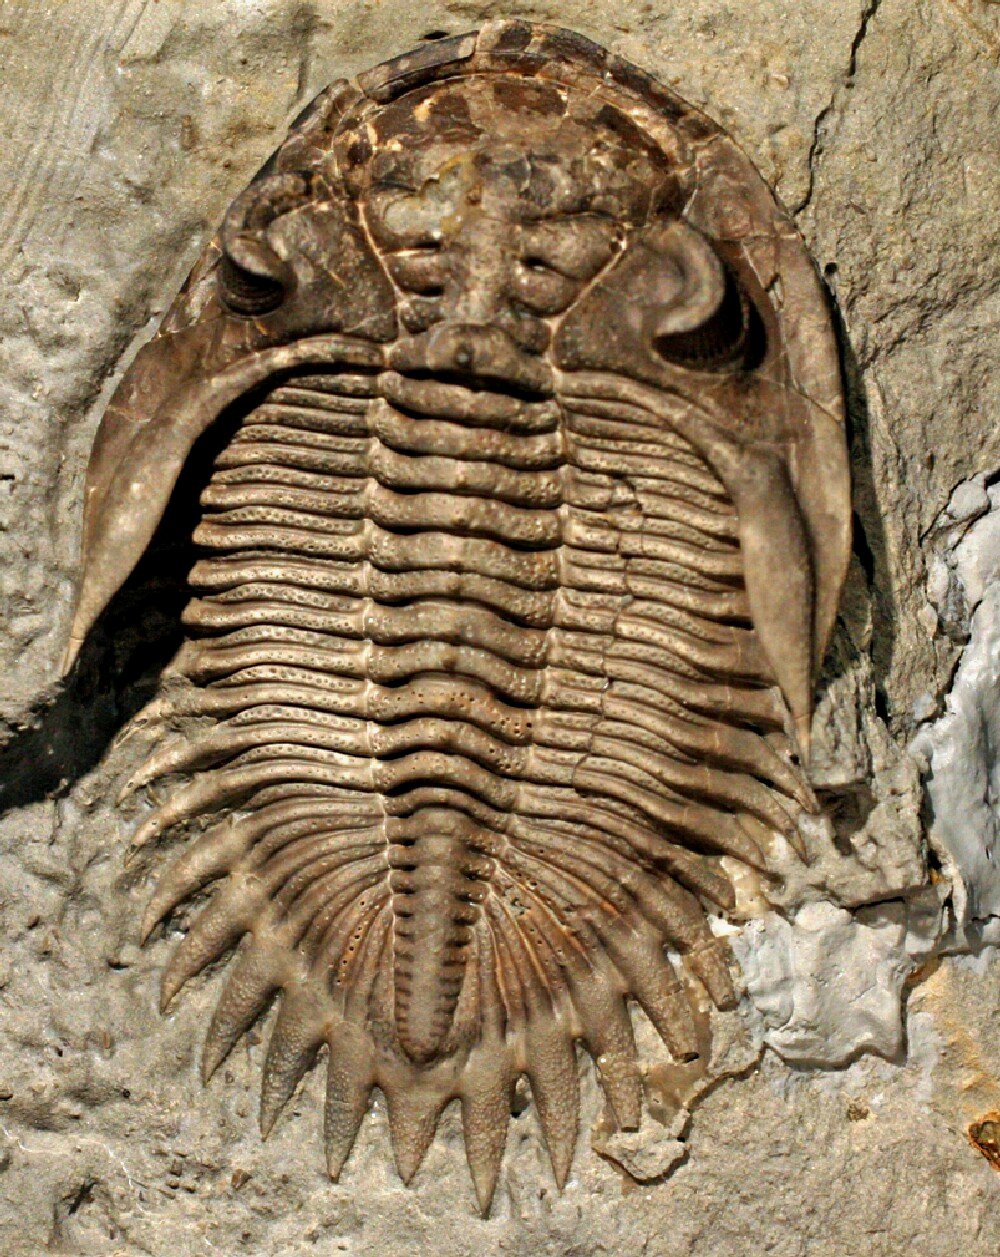 Bellacartwrightia Trilobite